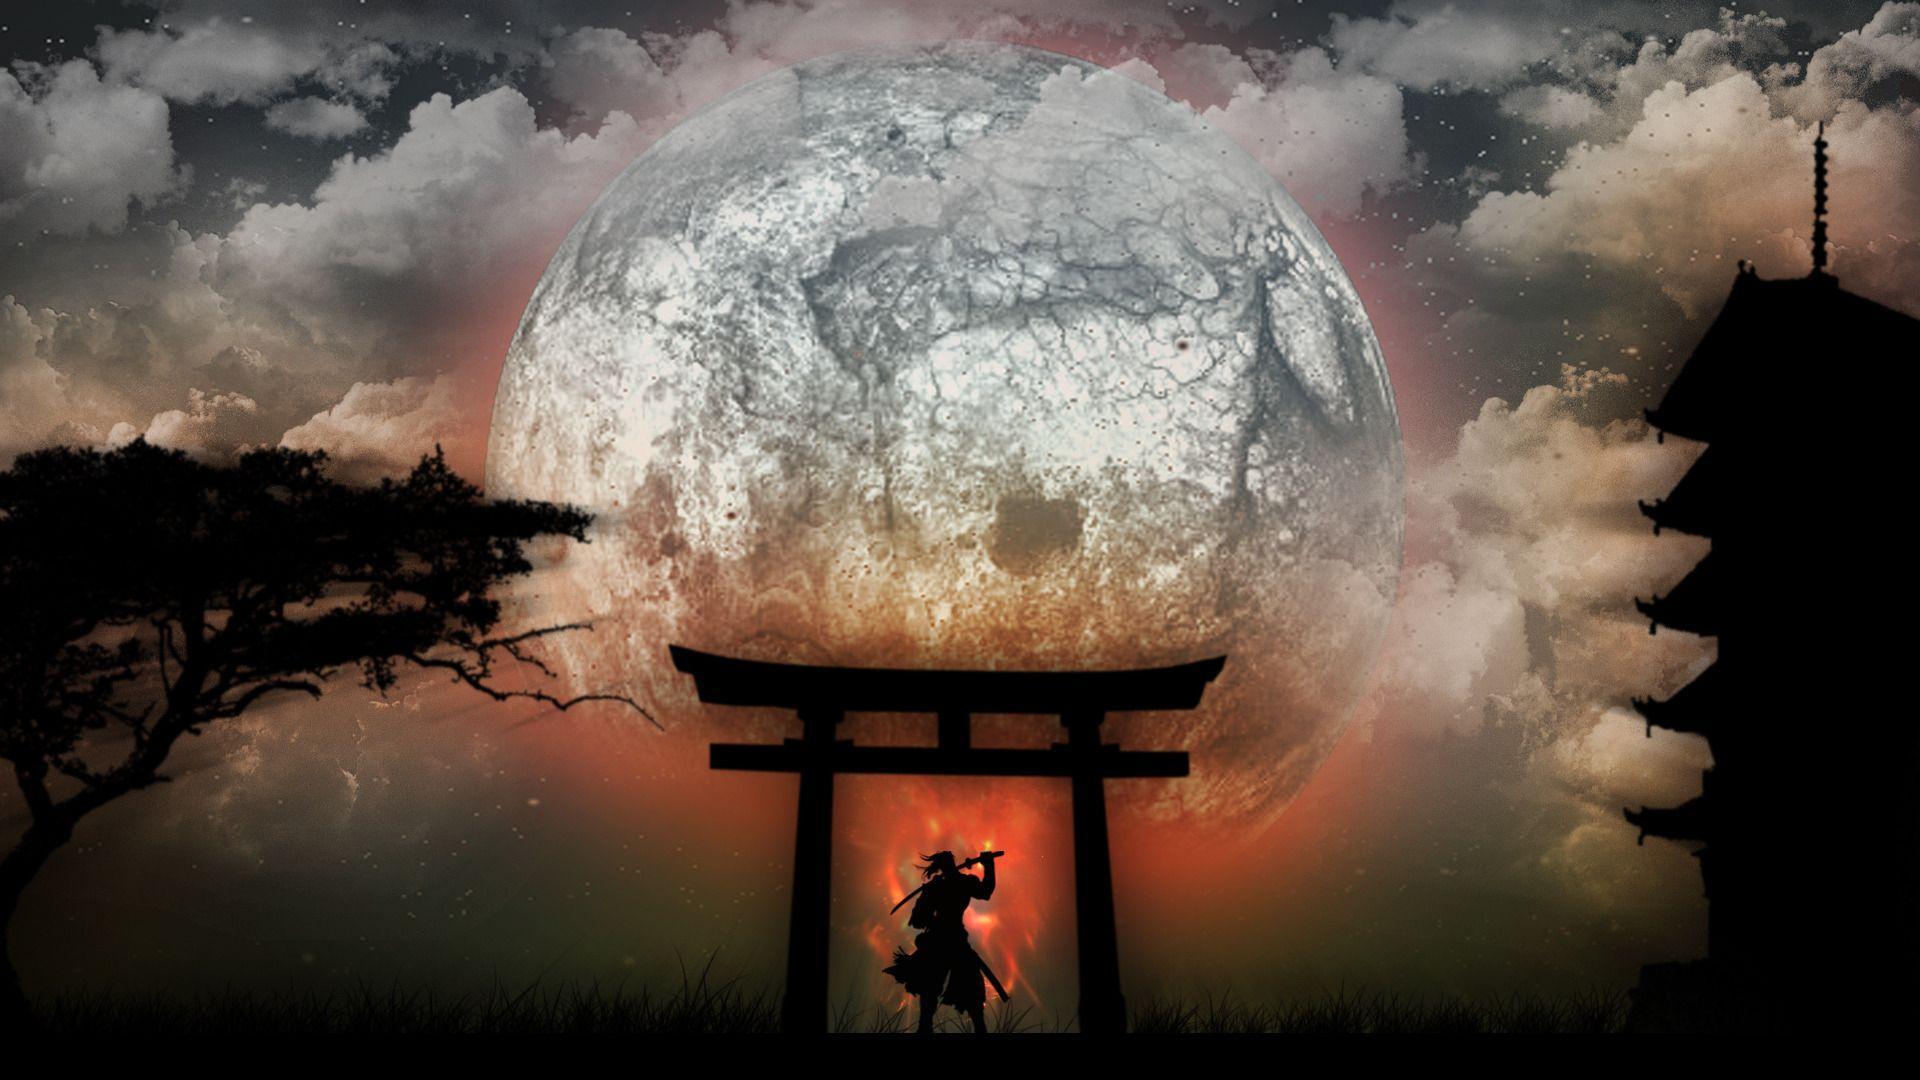 Samurai Hd Wallpaper / Desktop Samurai HD Wallpapers | PixelsTalk.Net